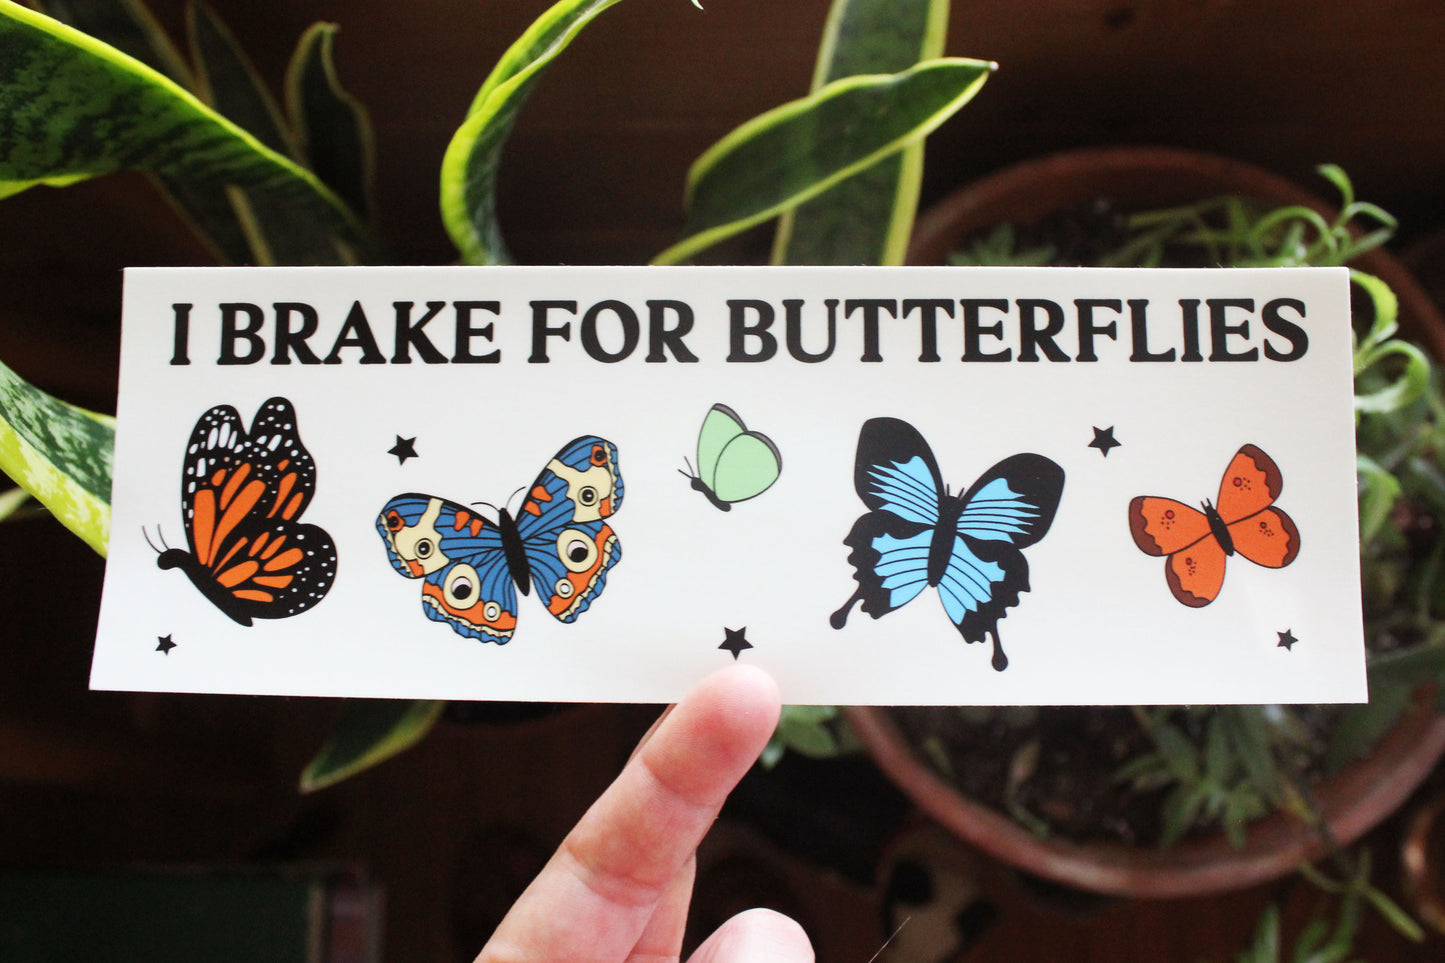 I Brake For Butterflies Bumper Sticker